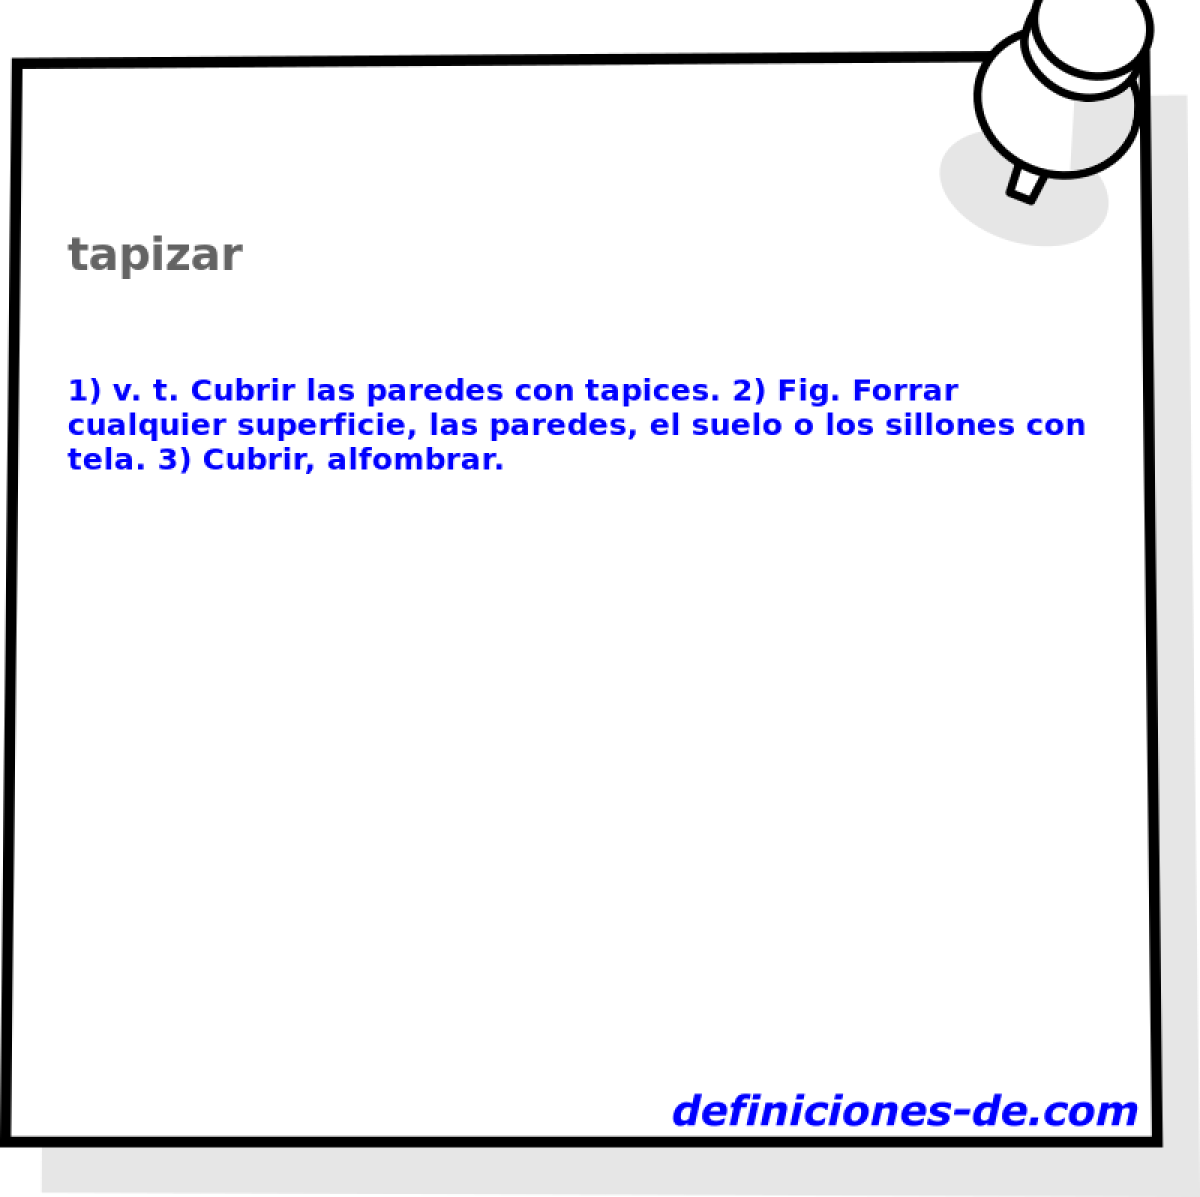 tapizar 